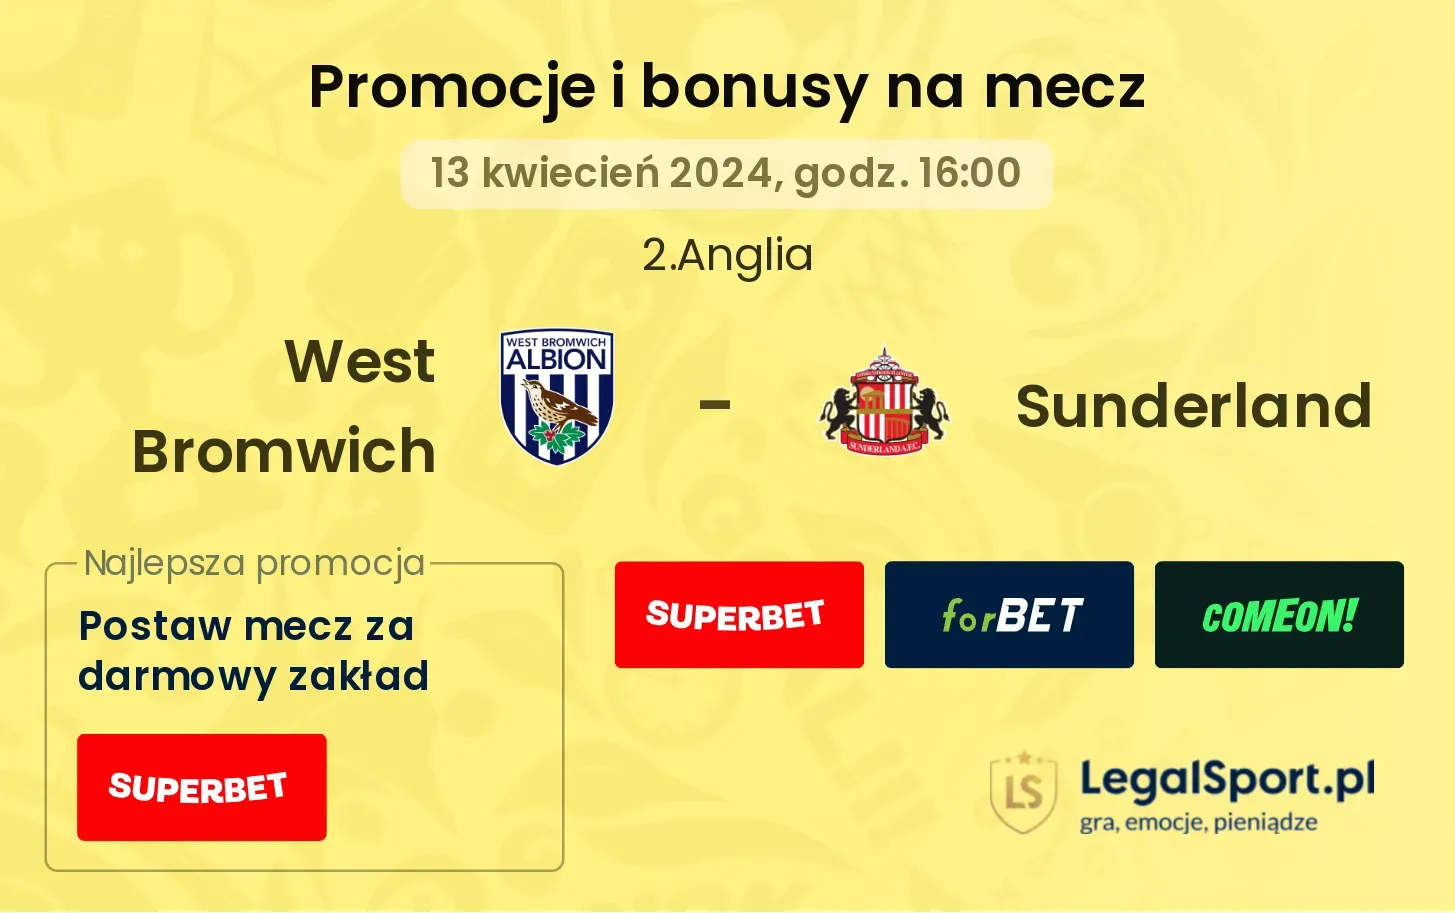 West Bromwich - Sunderland promocje bonusy na mecz